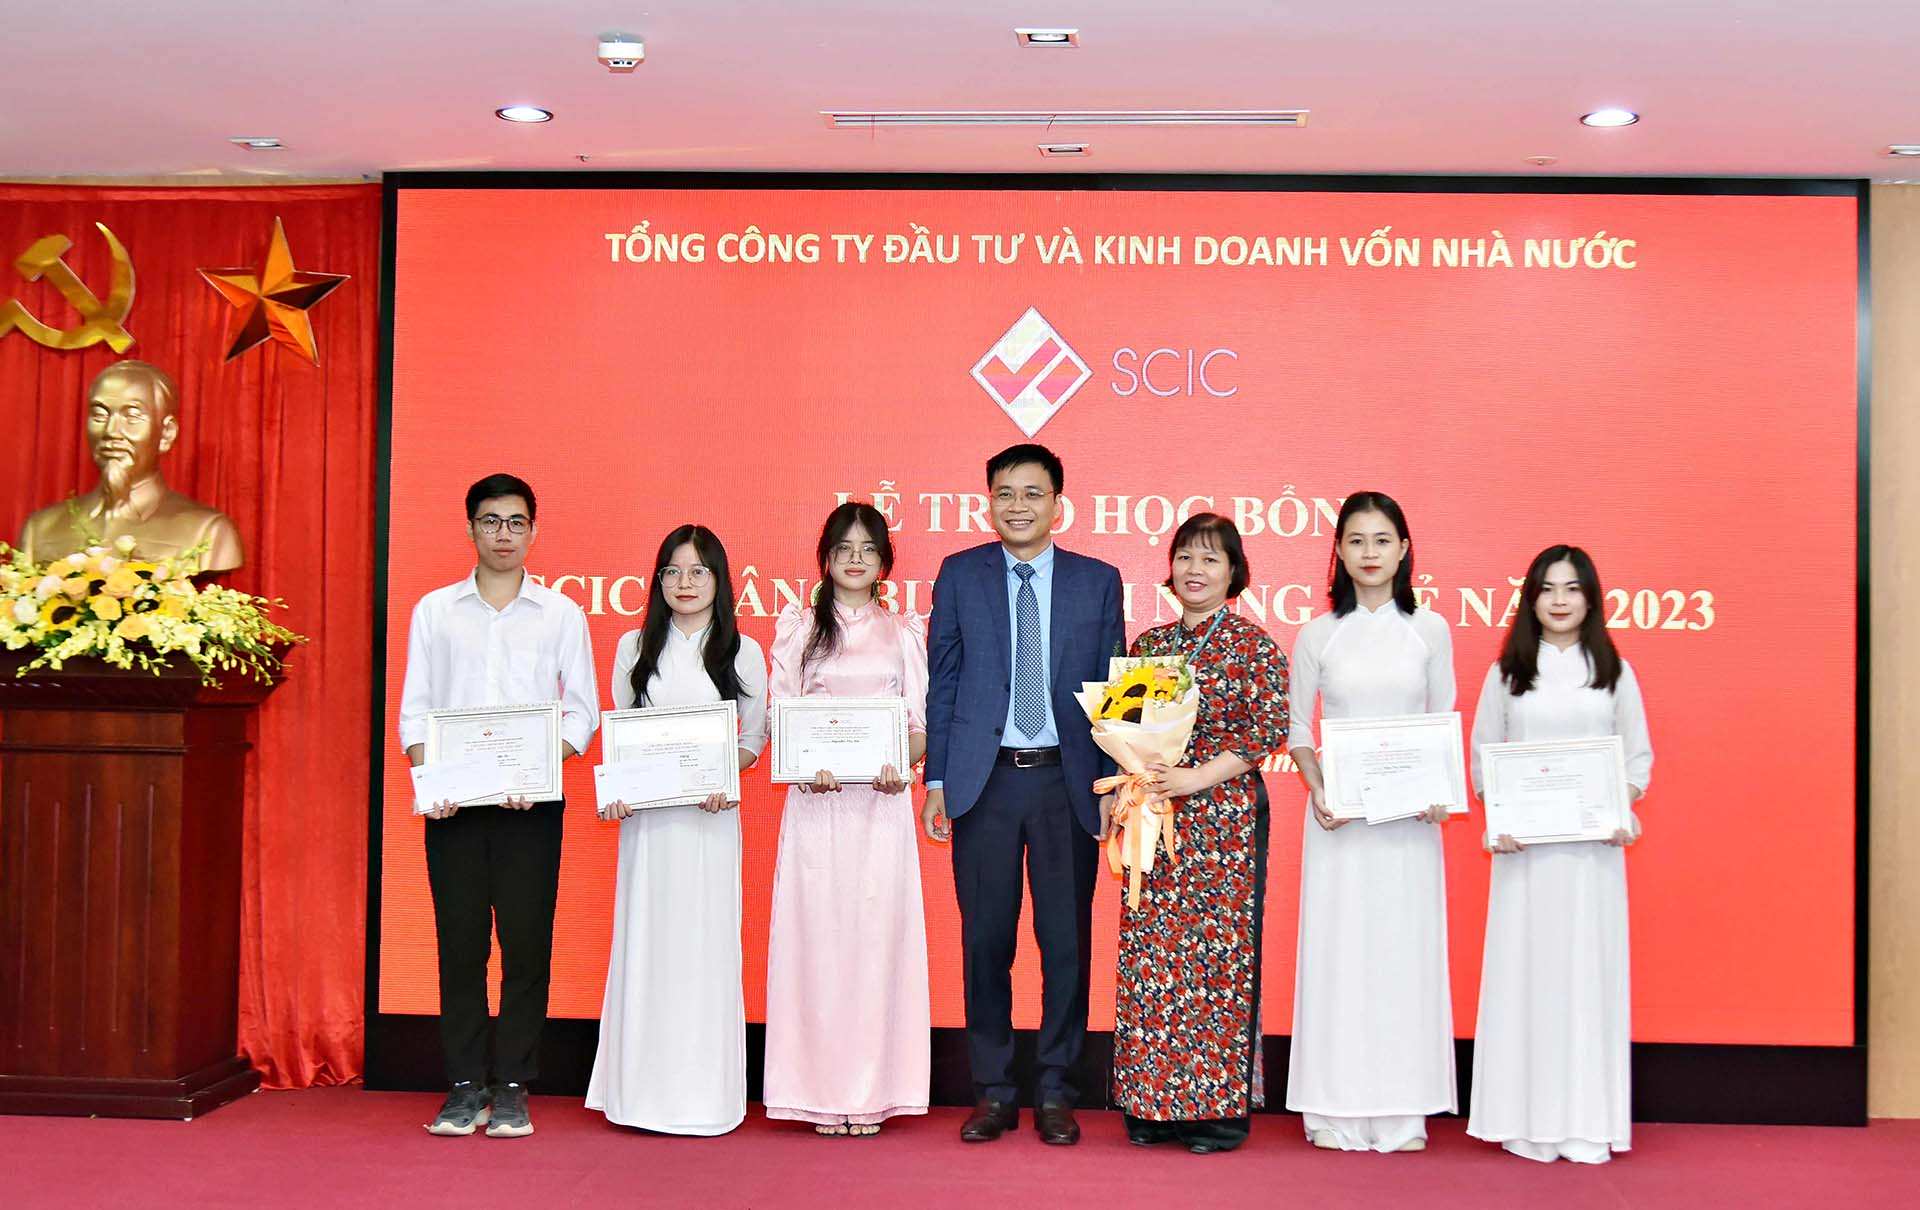 Nguyễn Thu Hà nhận học bổng SCIC năm 2023 